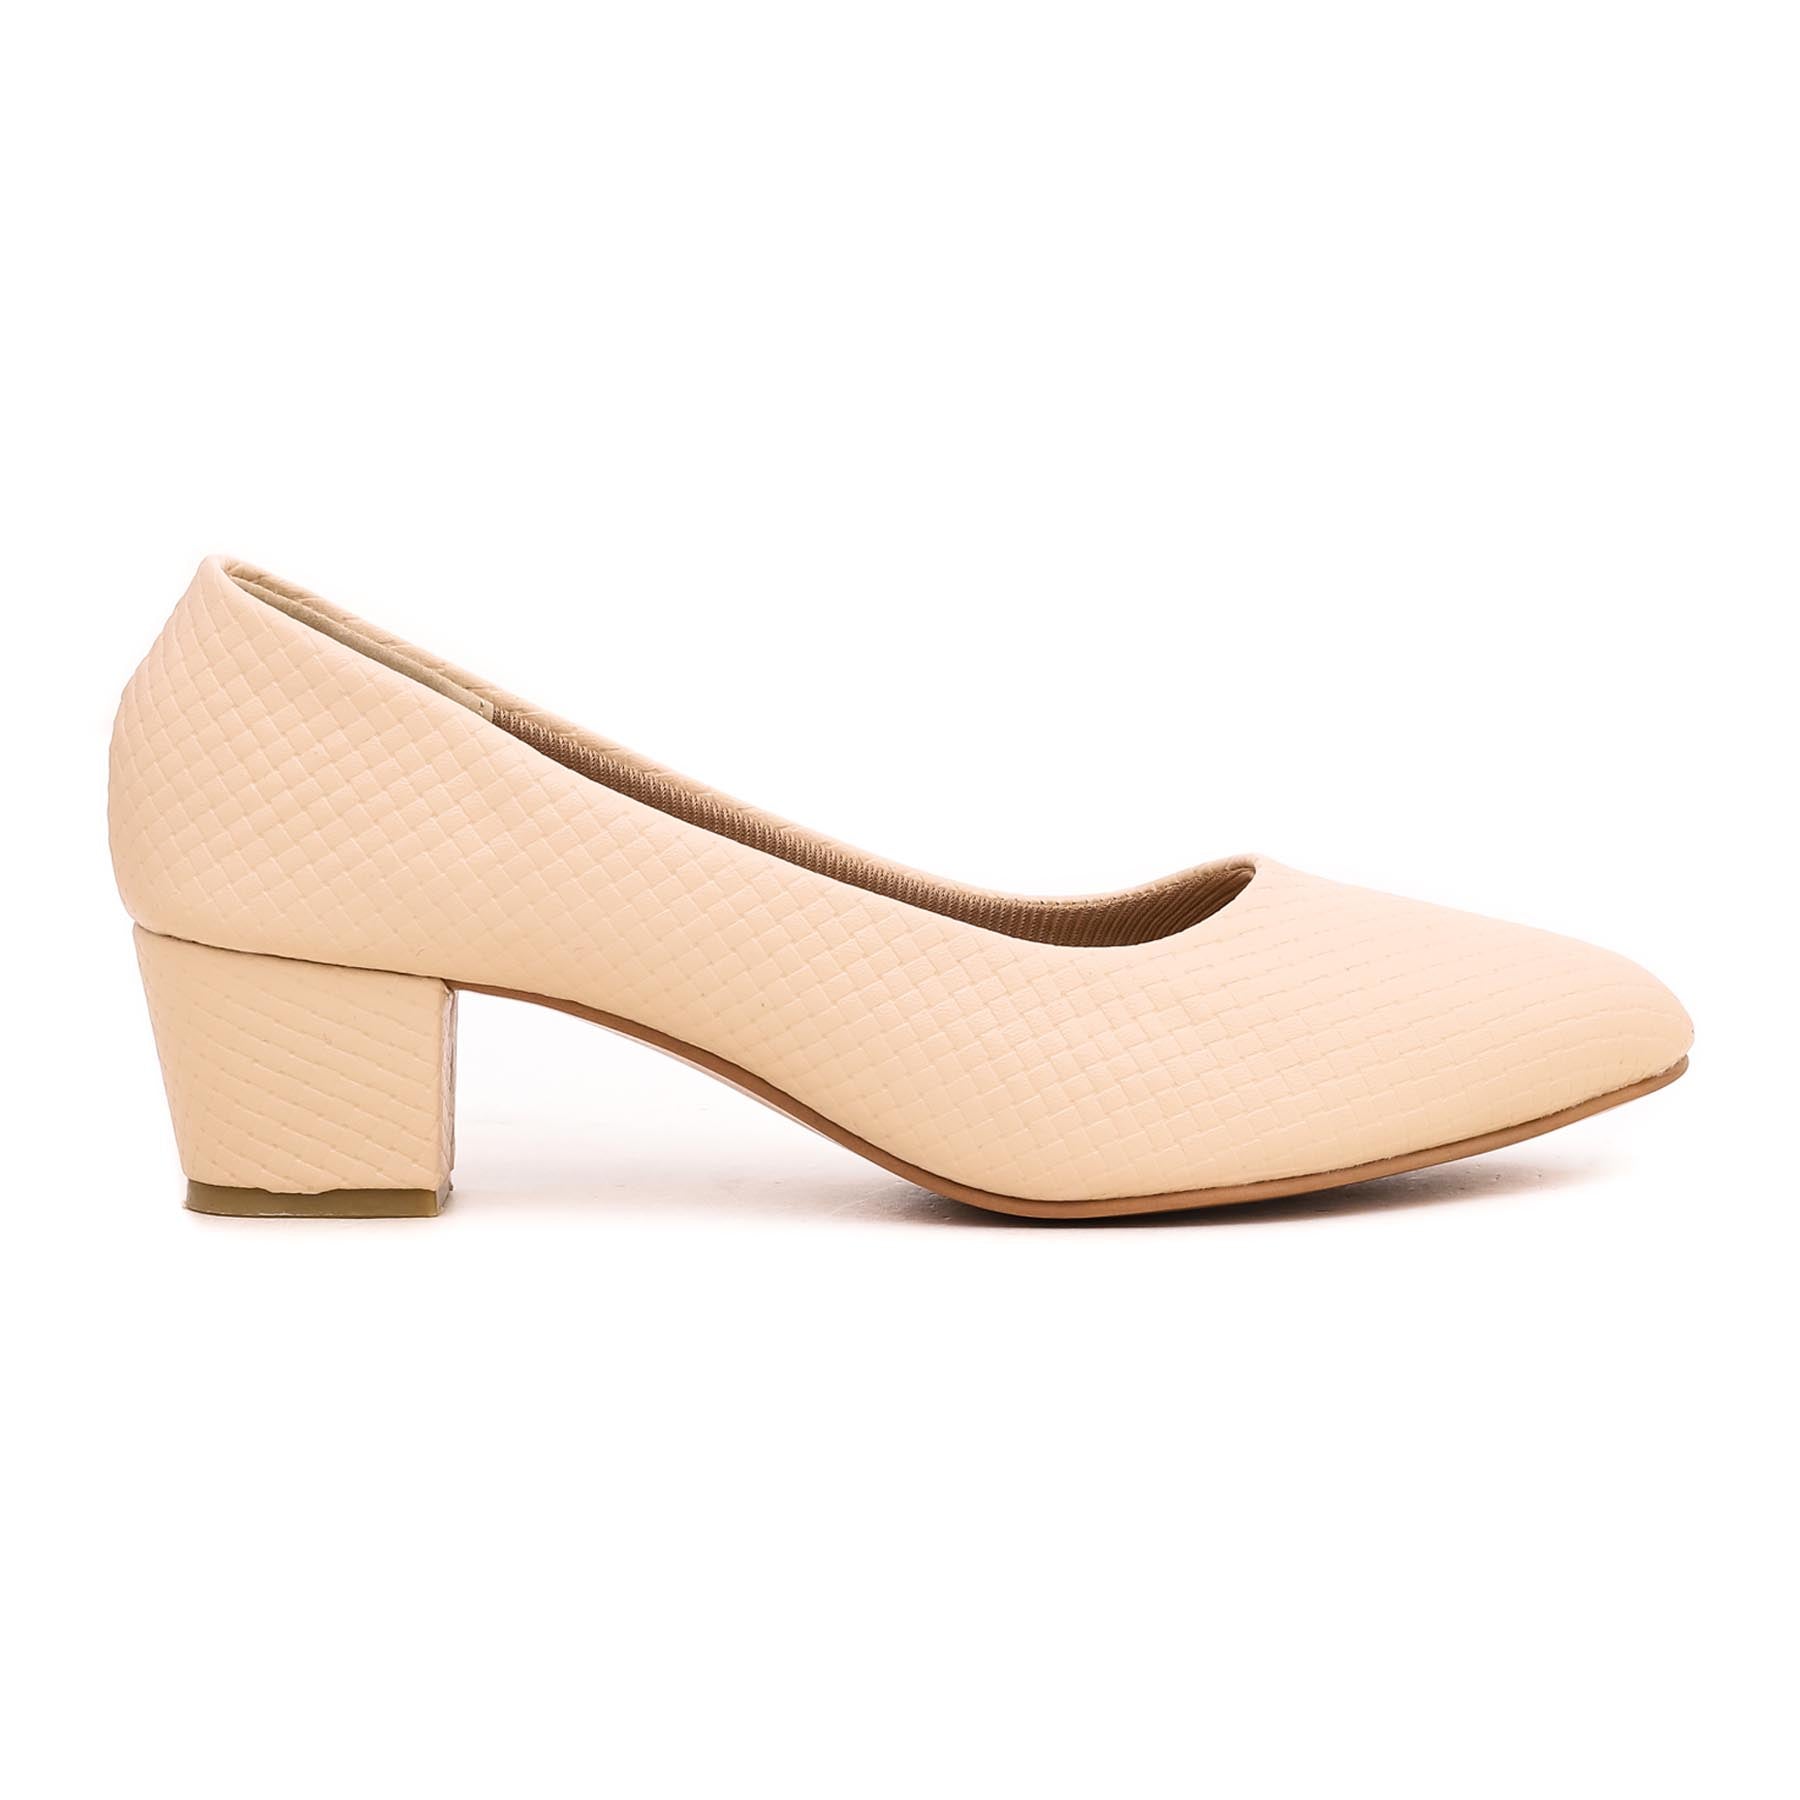 Jane Shilton Cream Satin Beaded Court Shoes size 4